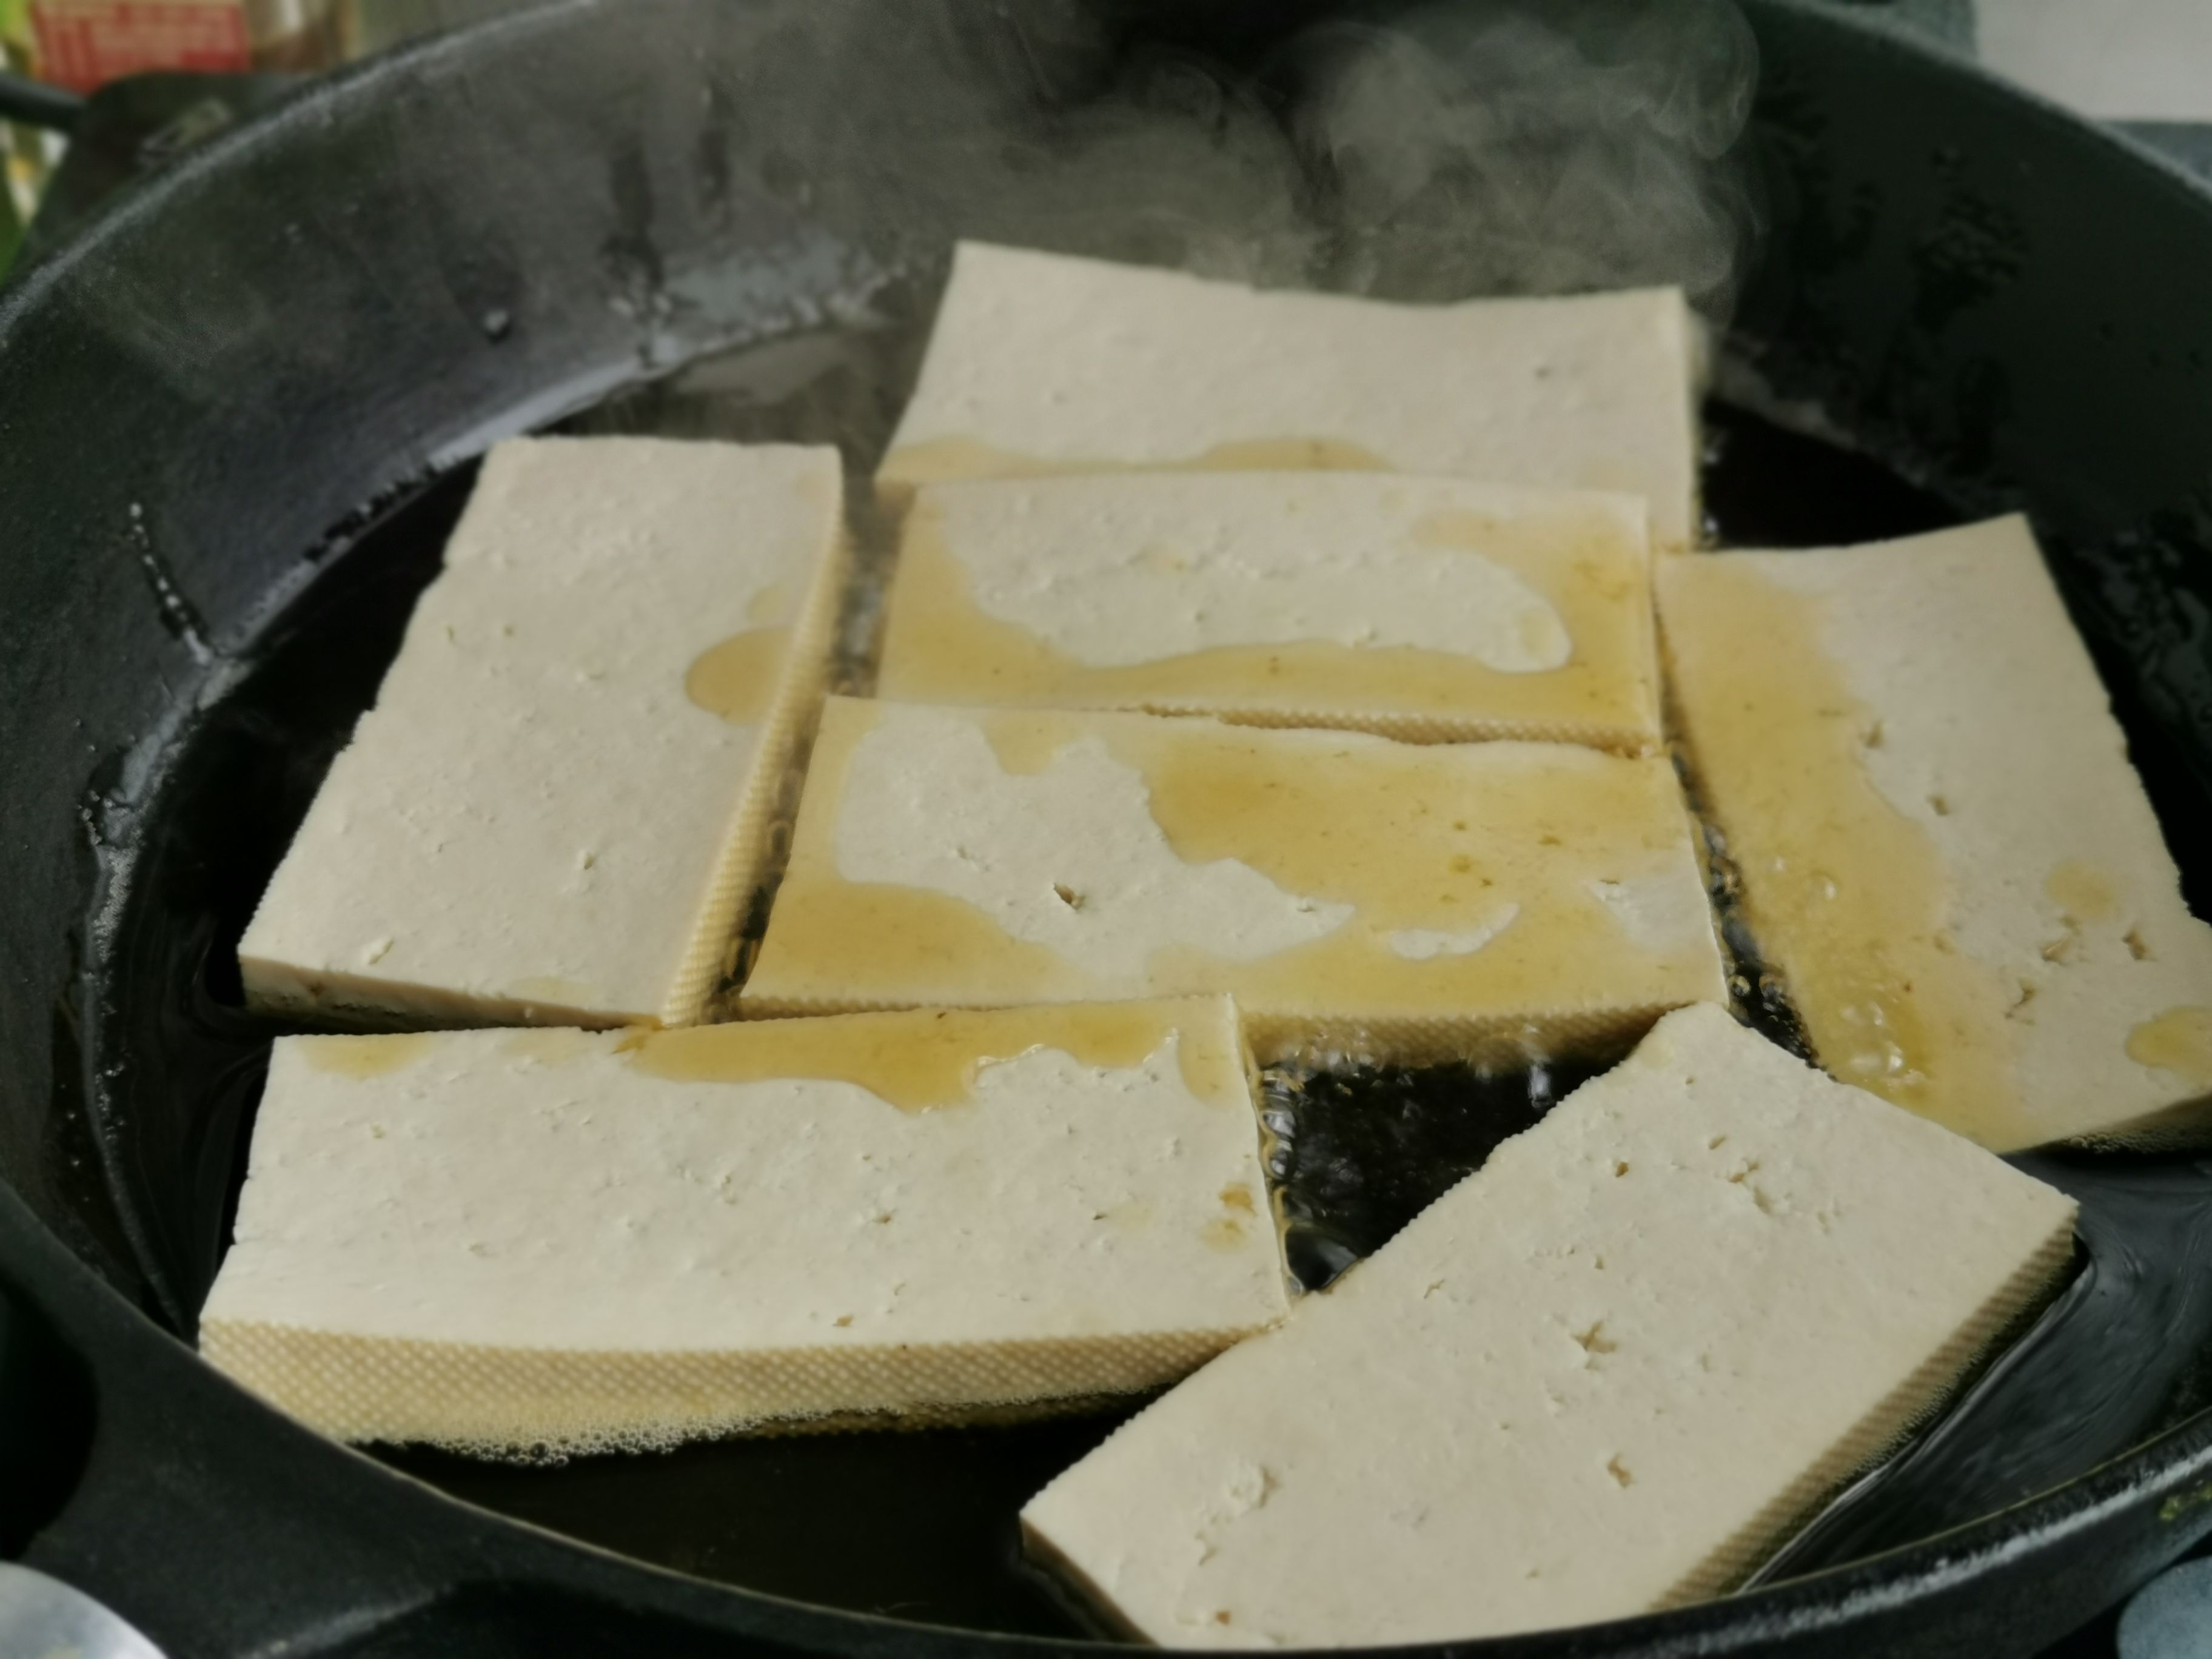 Sizzling Tofu recipe